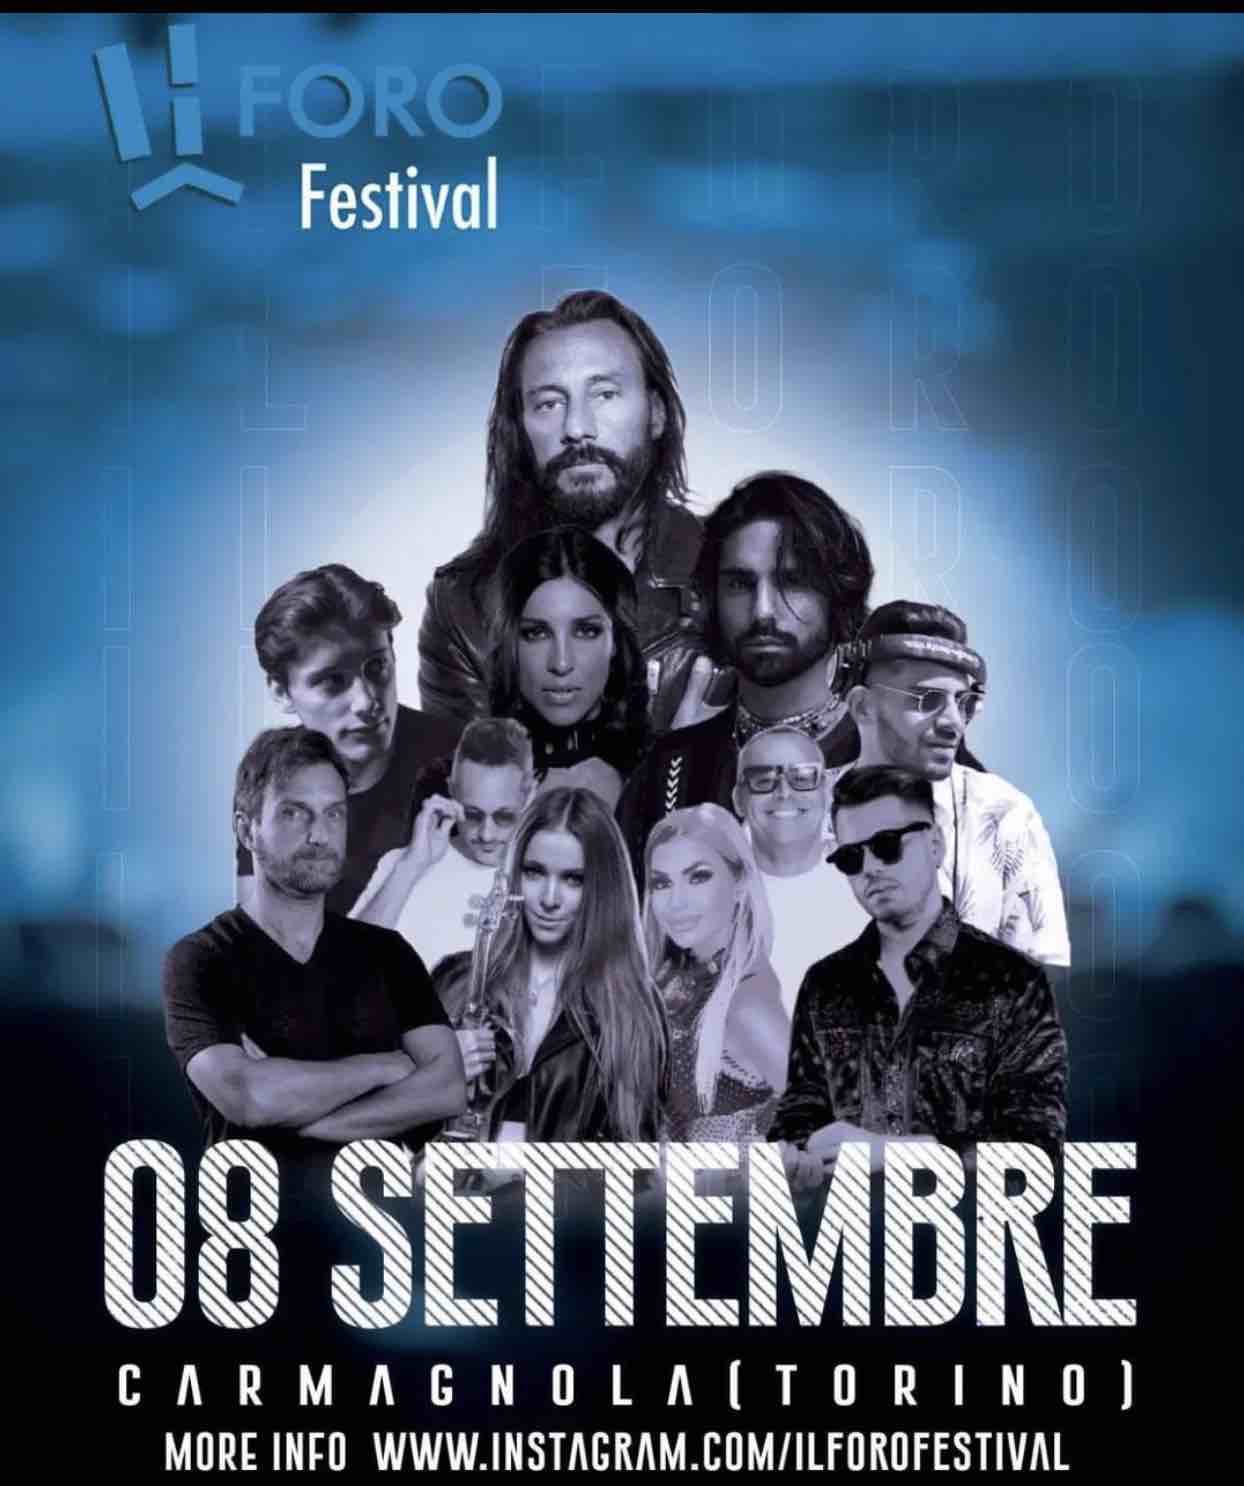 Il Foro Festival - Carmagnola (TO): grande musica fino all’11 settembre 2022.. Con Bob Sinclar, Mario Biondi, Sunshine Gospel Choir, Dagma Night